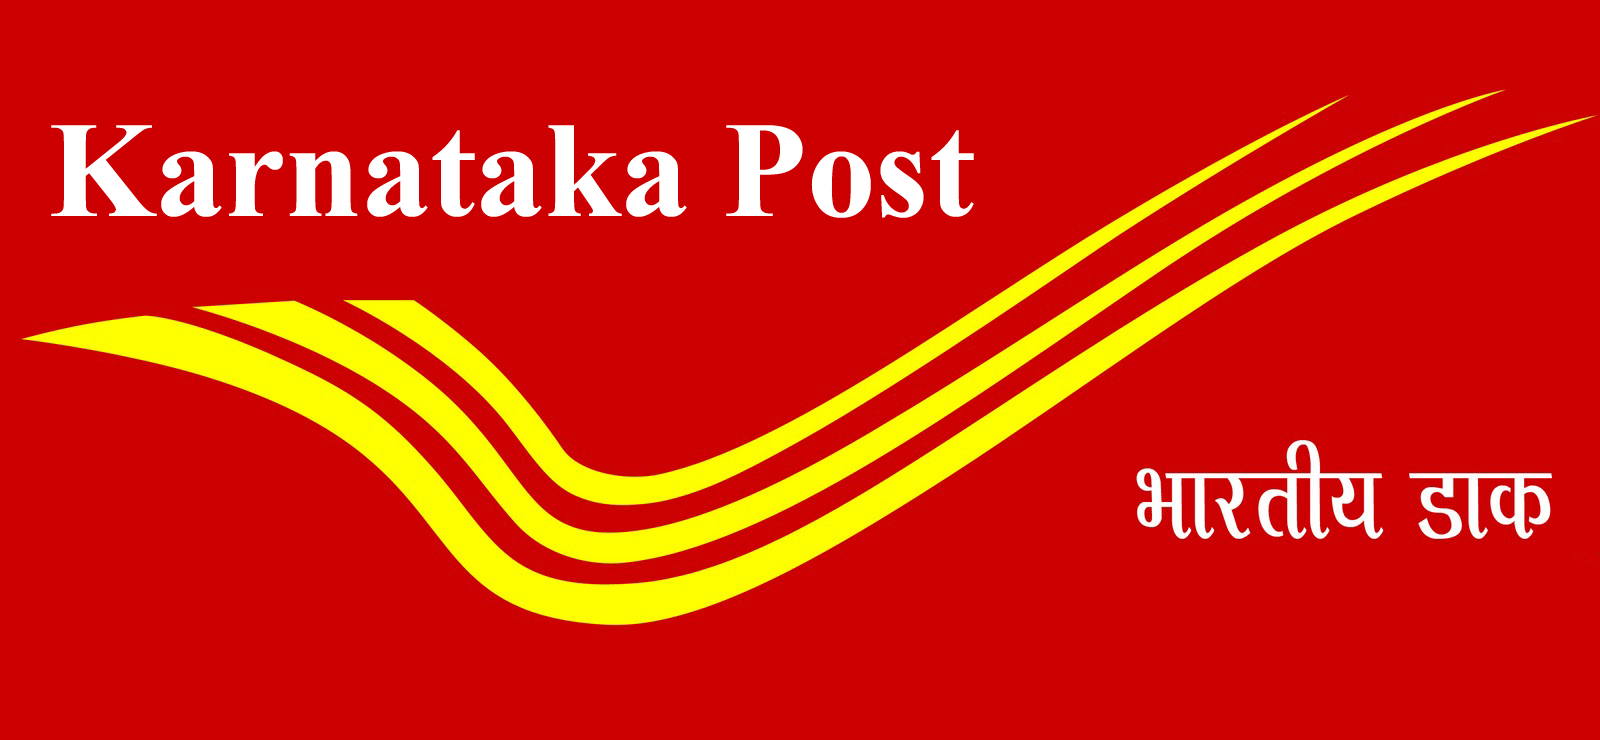 Karnataka State Postal Department 